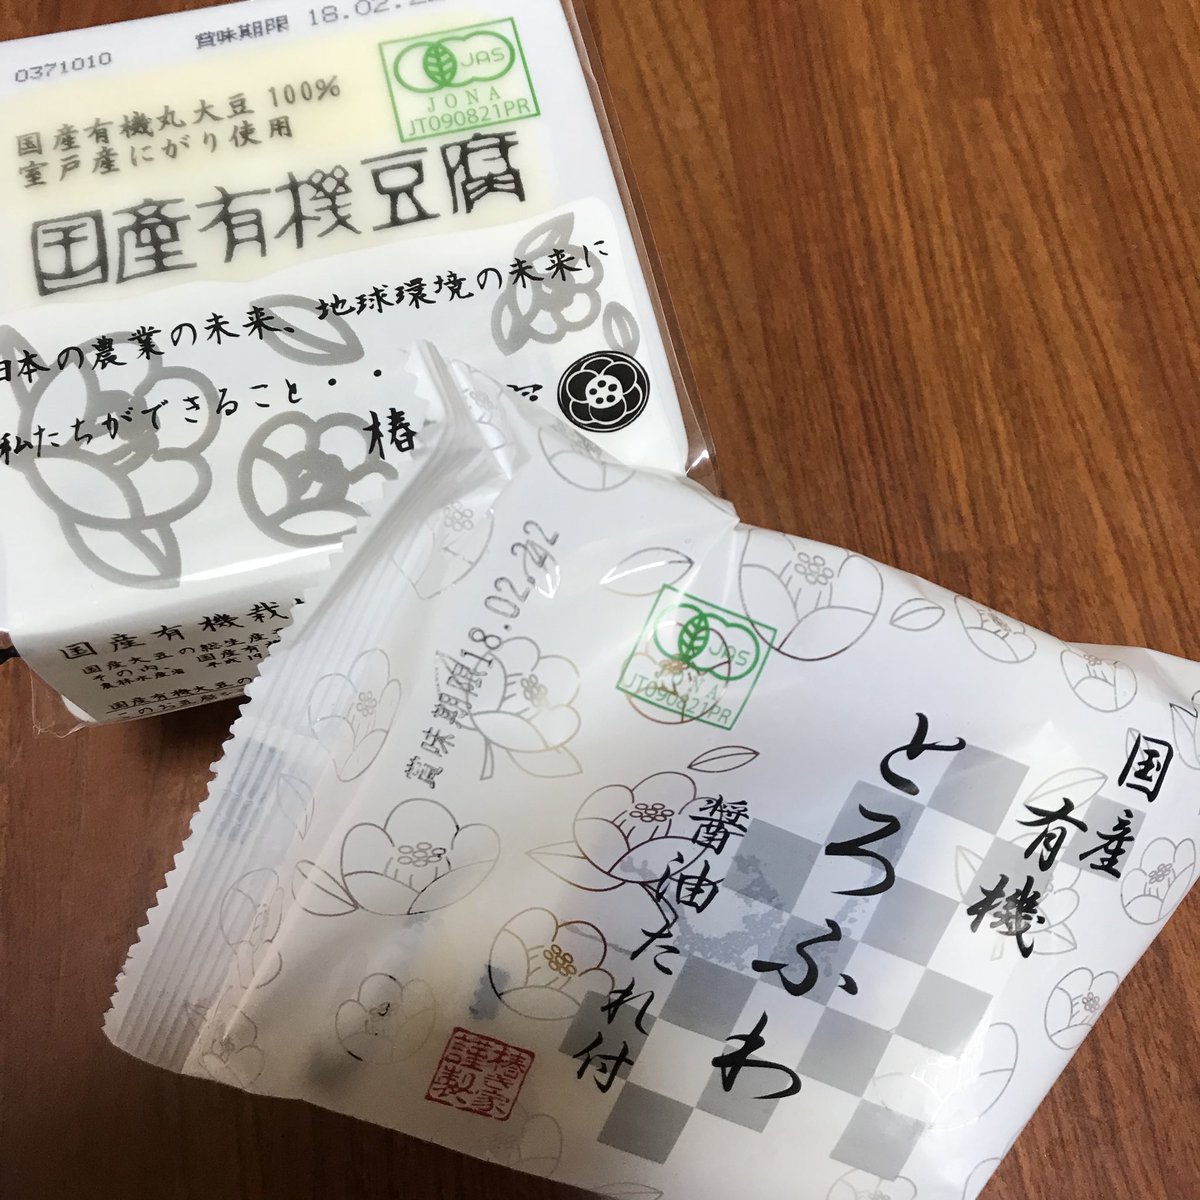 P D C Pa Twitter ワフードメイド とうふ洗顔 のとうふは 広島県にあるとうふ屋 椿き屋 さんの豆乳とにがりを使用しています 先日 椿き屋さんからお豆腐などいただきました T Co Igsrxpba9h